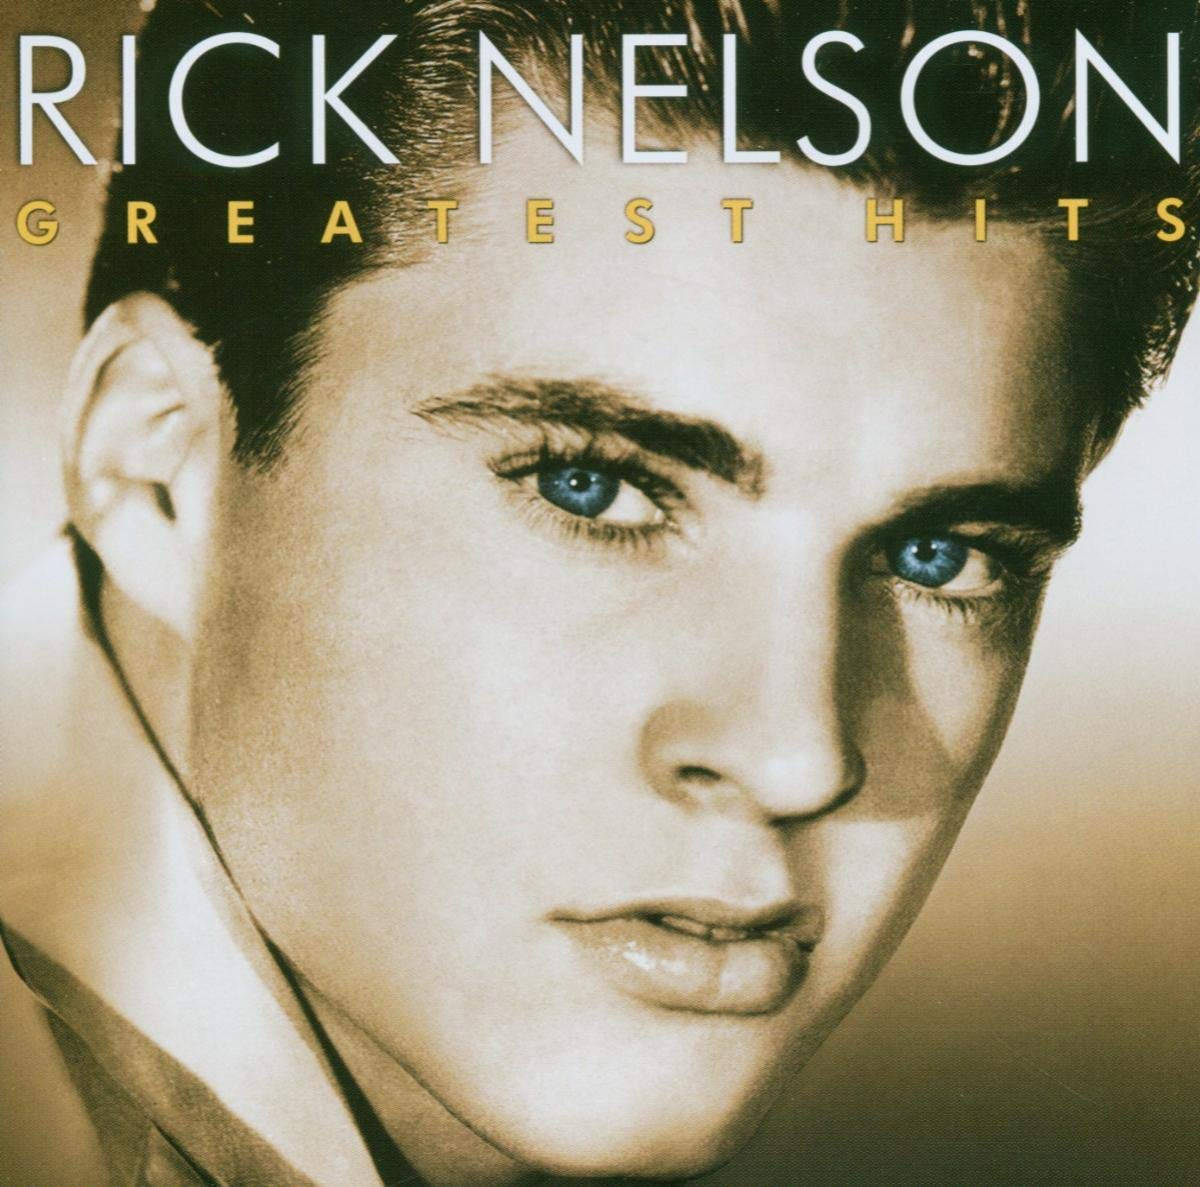 Rick Nelson's Legendary Greatest Hits Album Cover 2002 Wallpaper